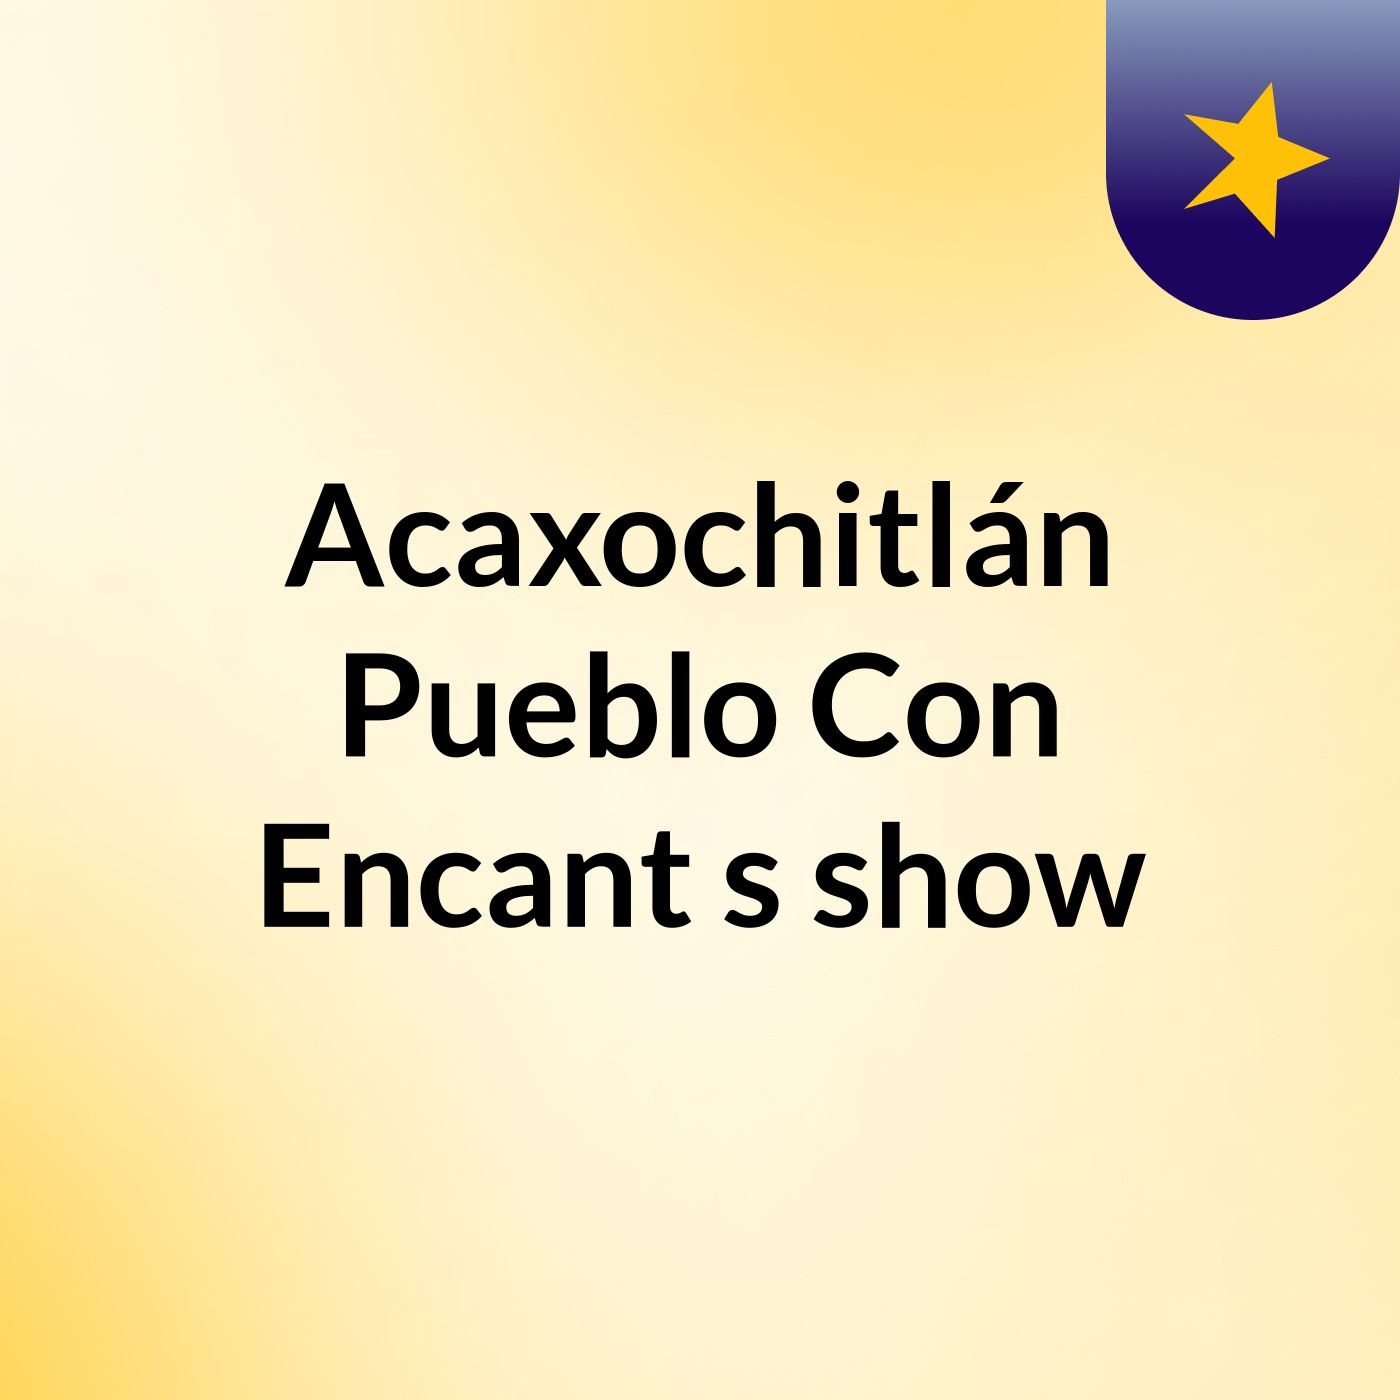 Acaxochitlán Pueblo Con Encant's show